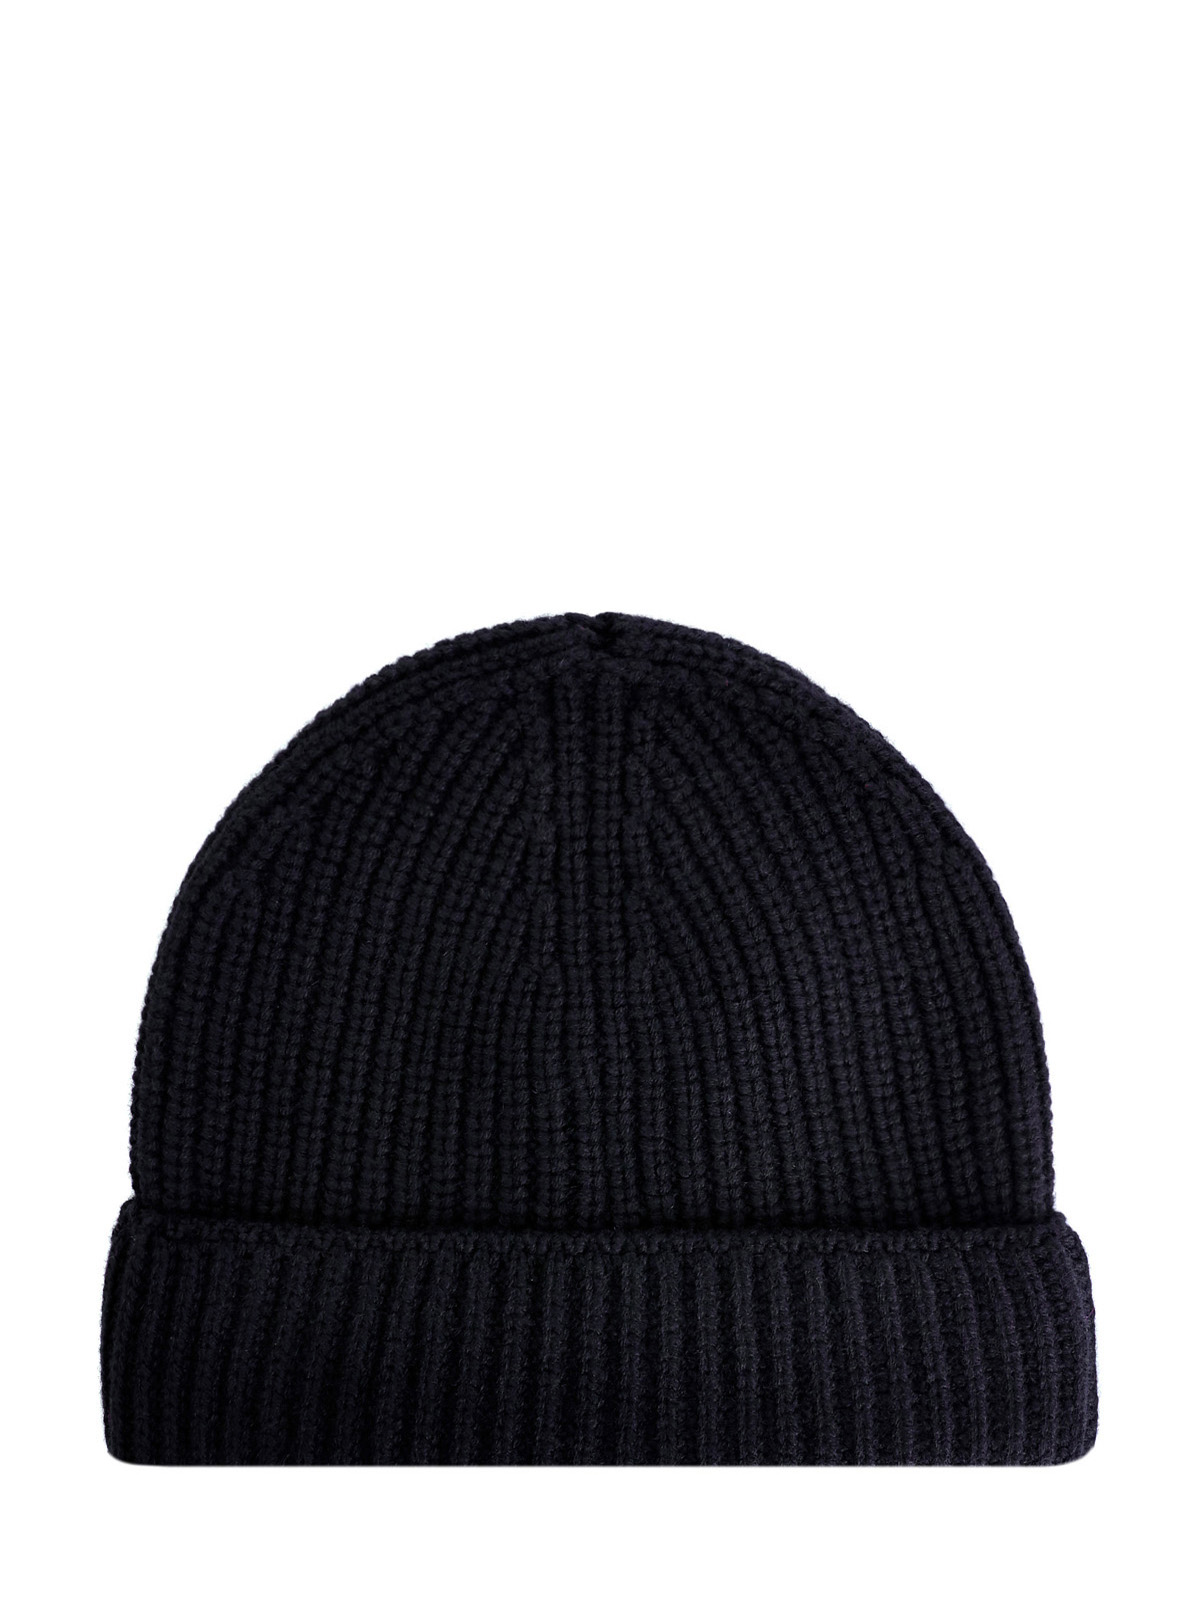 Шерстяная шапка с волокнами кашемира и логотипом в тон MONCLER, цвет черный, размер 40.5;41;41.5;42;42.5;43;43.5;44 - фото 2